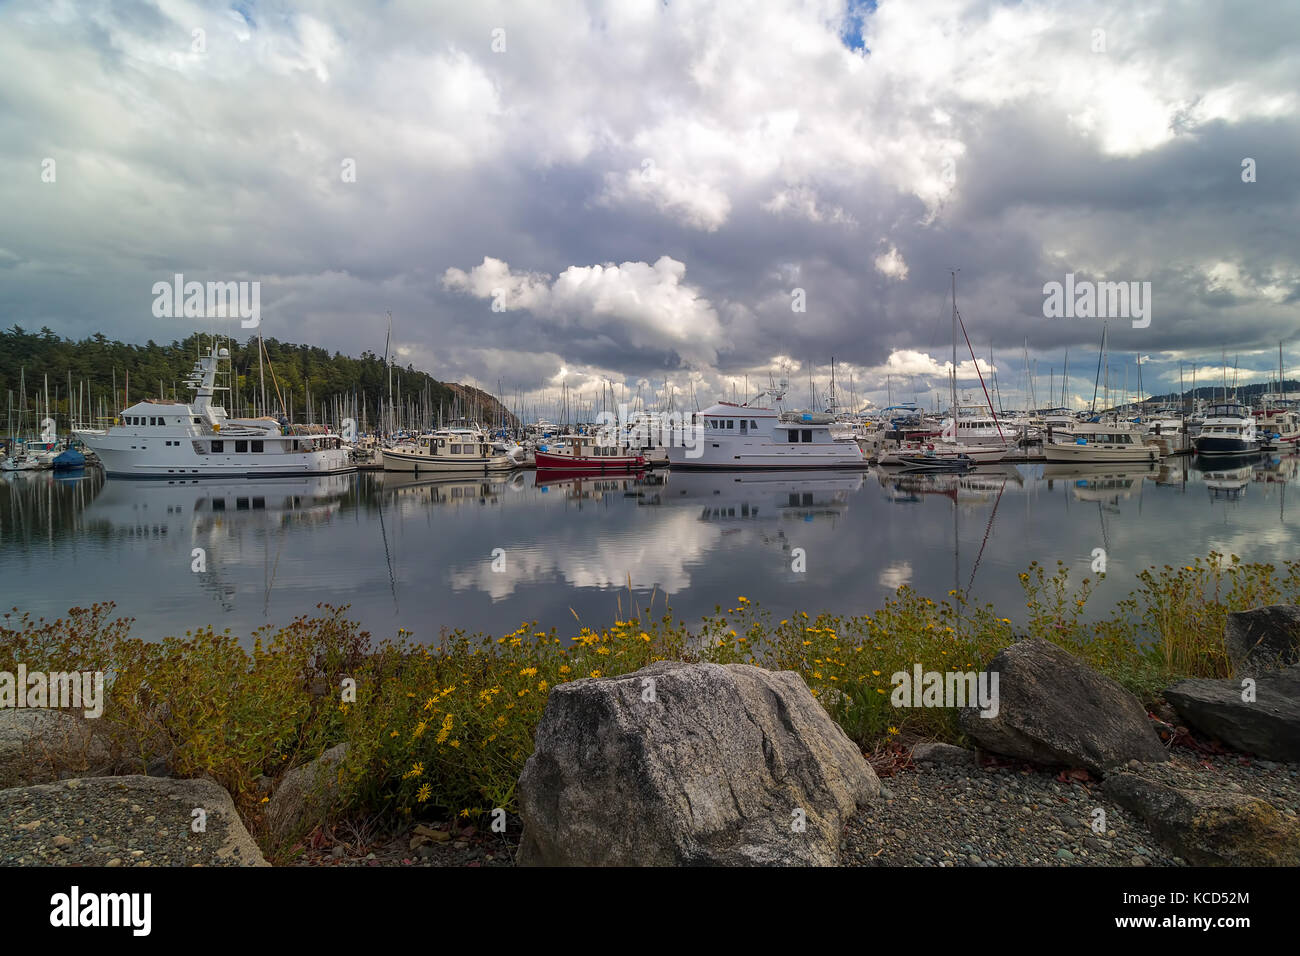 Port de plaisance de cap sante anacortes sur fidalgo island dans l'état de Washington sur un jour nuageux Banque D'Images